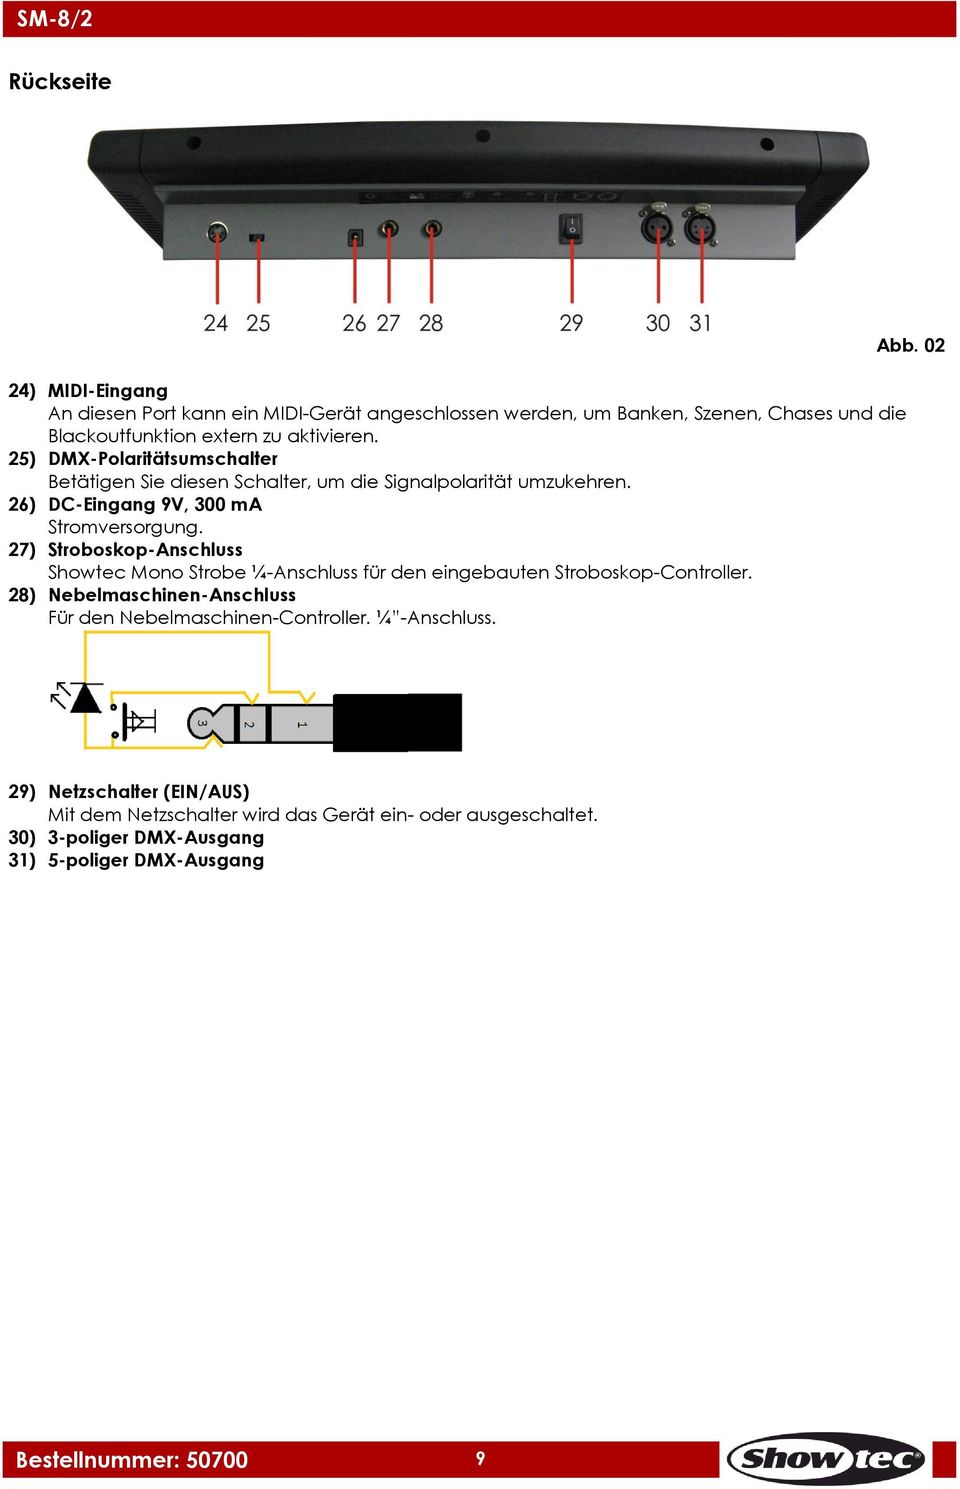 27) Stroboskop-Anschluss Showtec Mono Strobe ¼-Anschluss für den eingebauten Stroboskop-Controller.